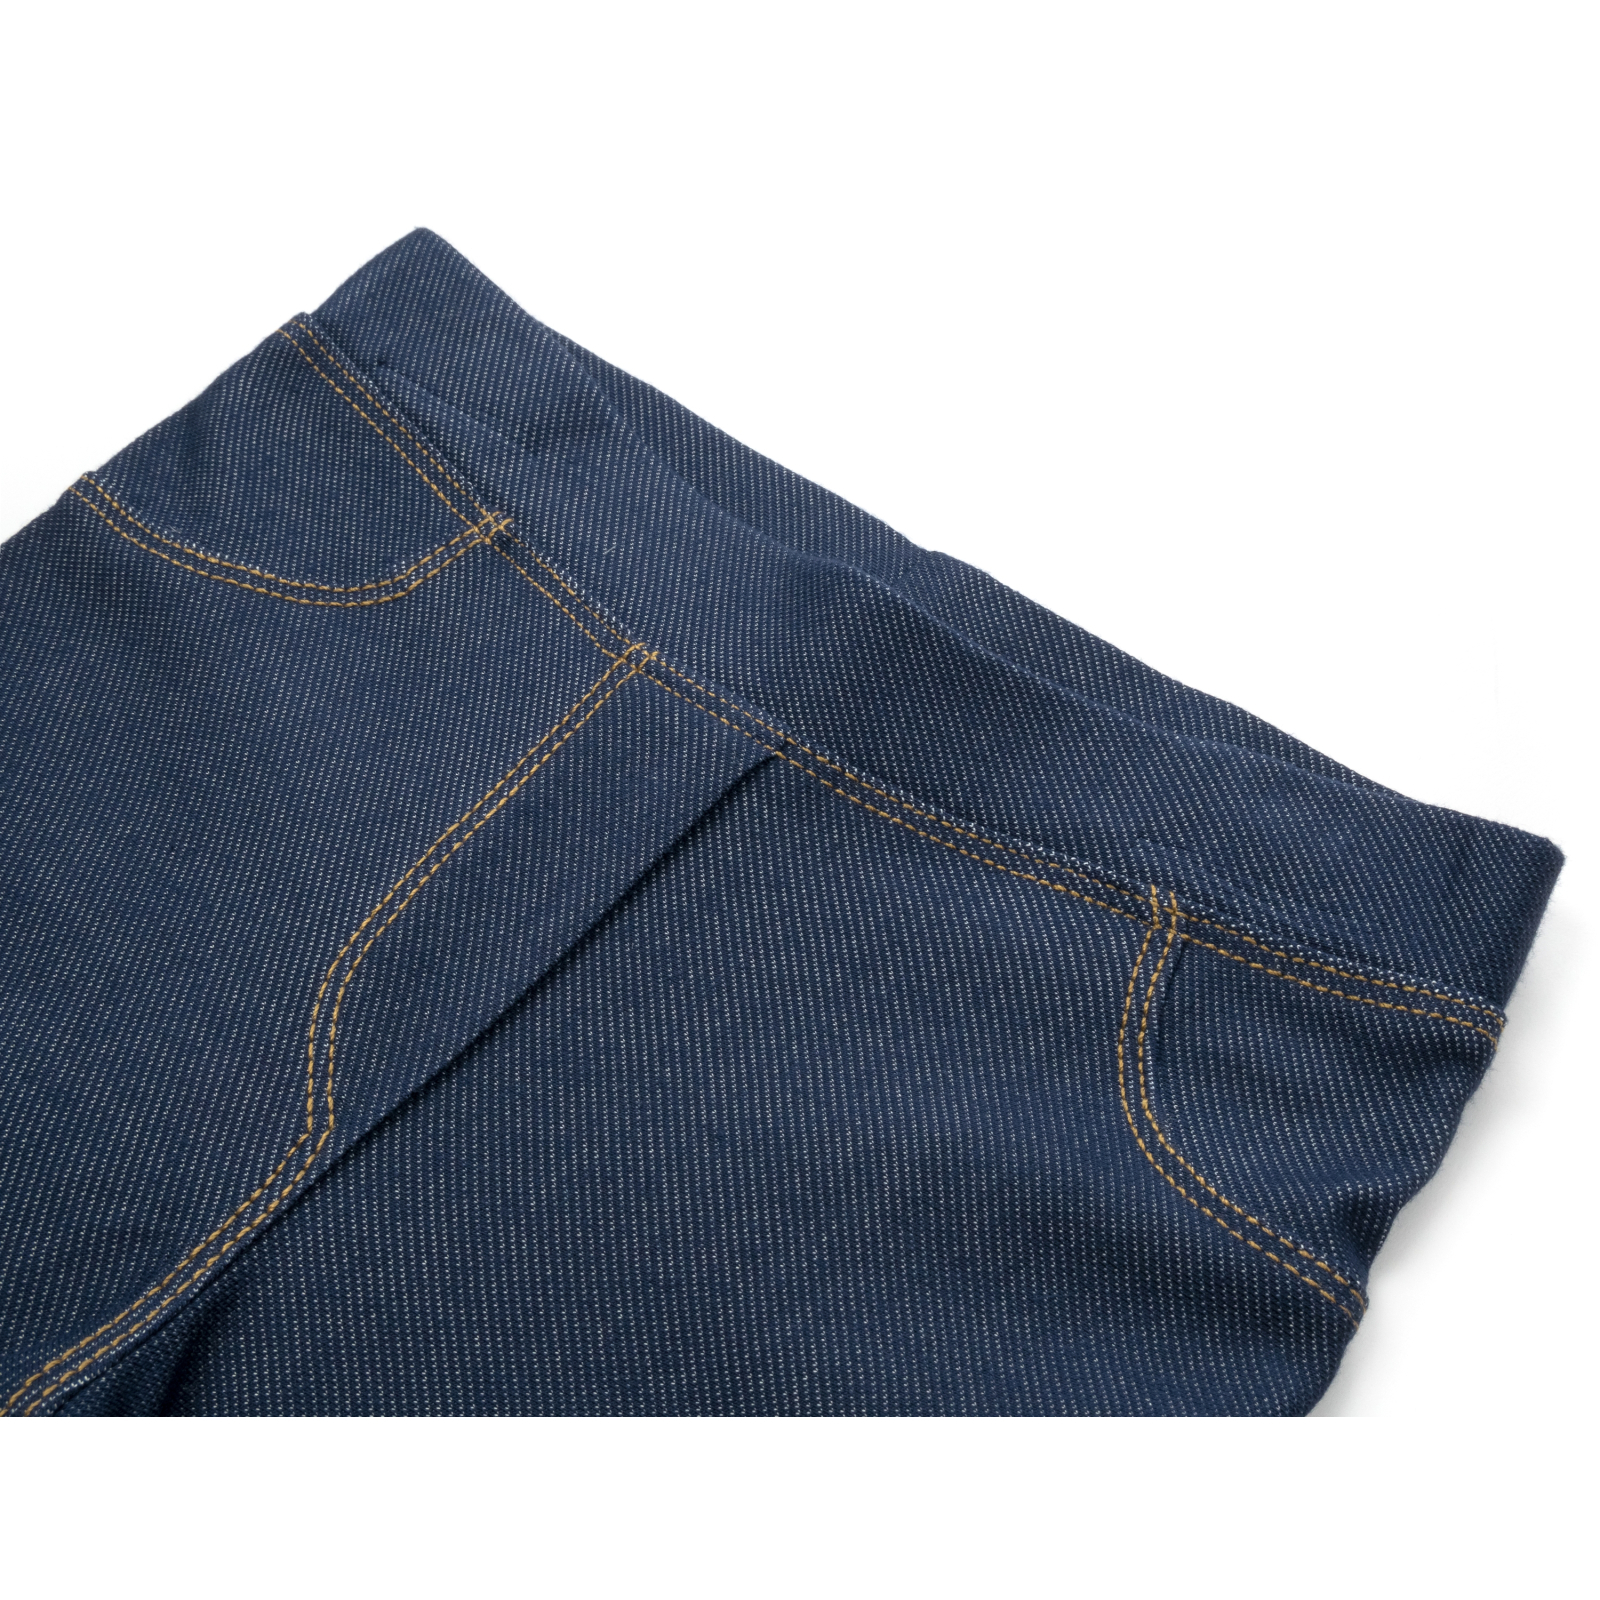 Лосины Breeze трикотажные (4416-134G-jeans) изображение 3